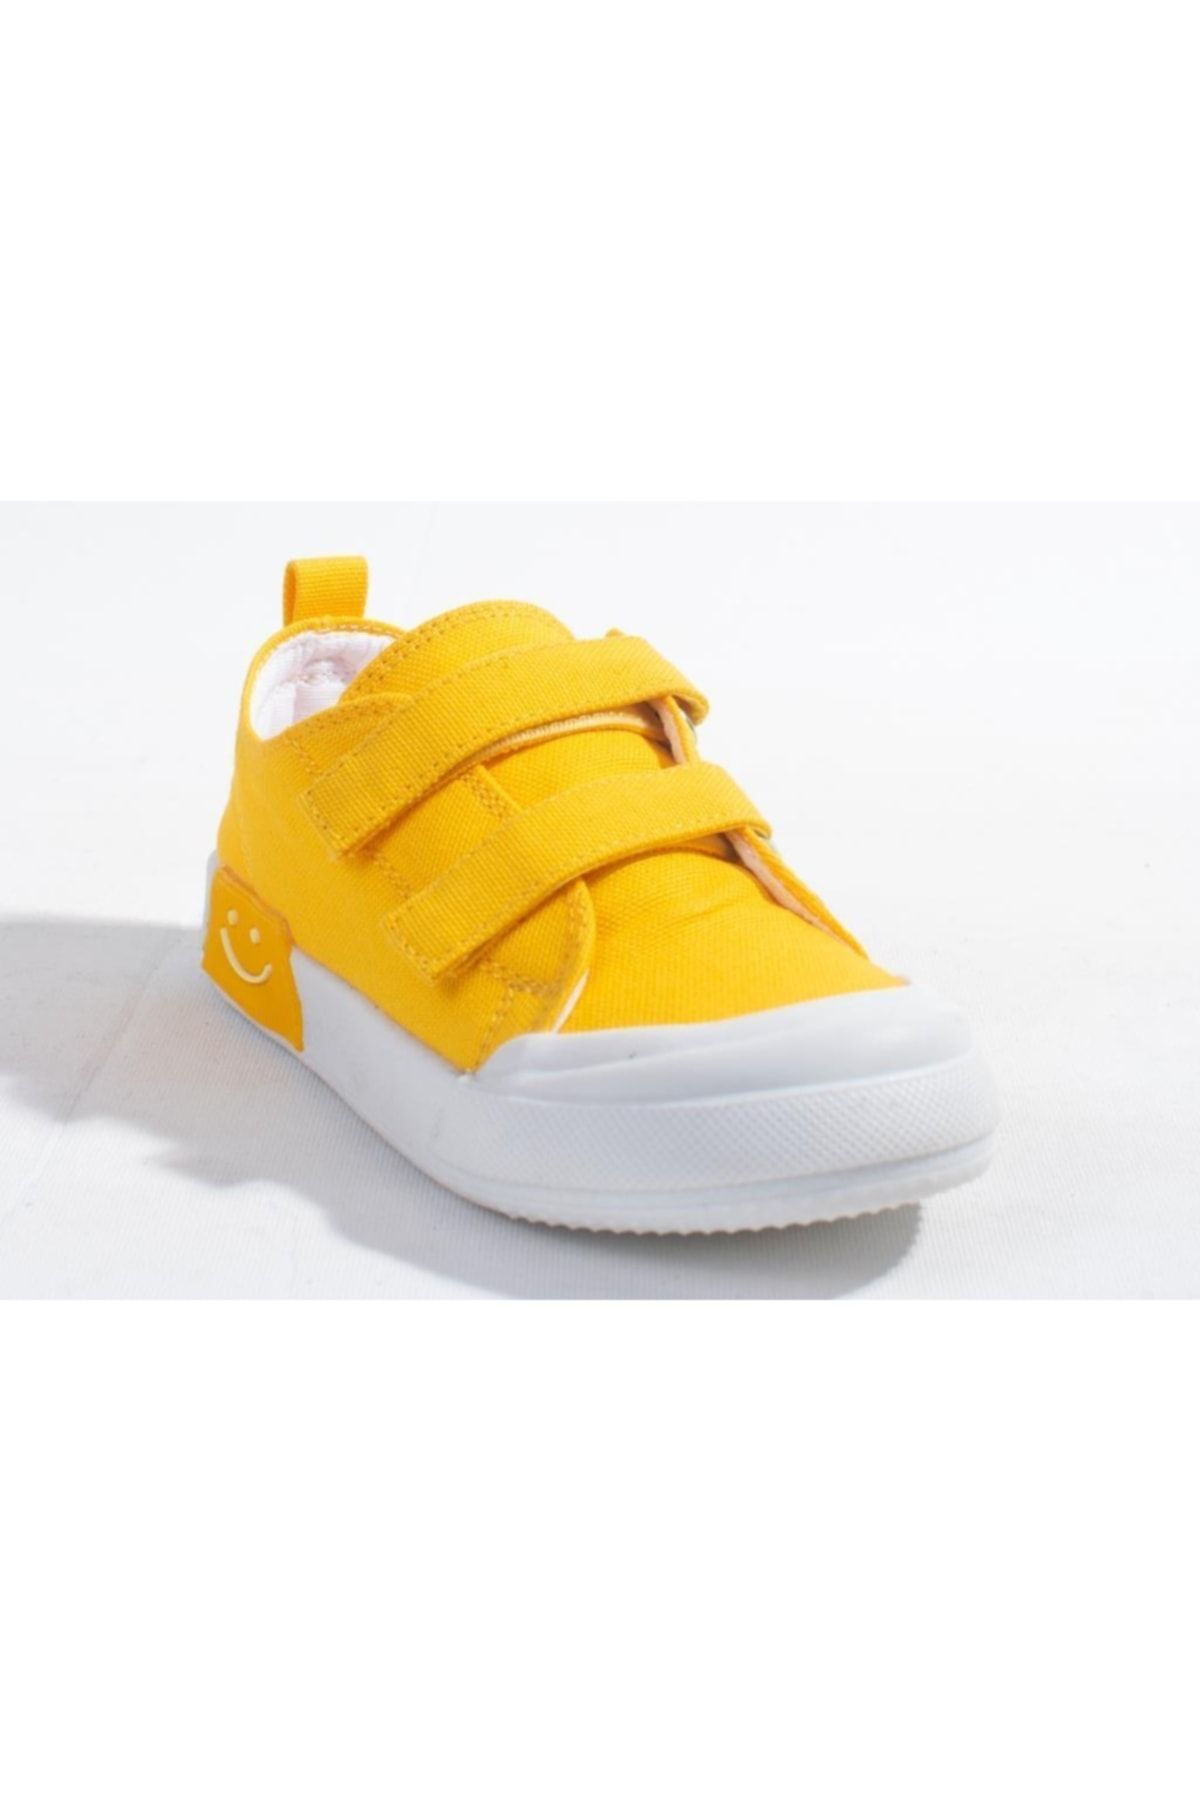 Vicco Luffy 925p22y251 Sarı Keten Işıklı Günlük Ortopedik Kız Çocuk Spor Ayakkabı